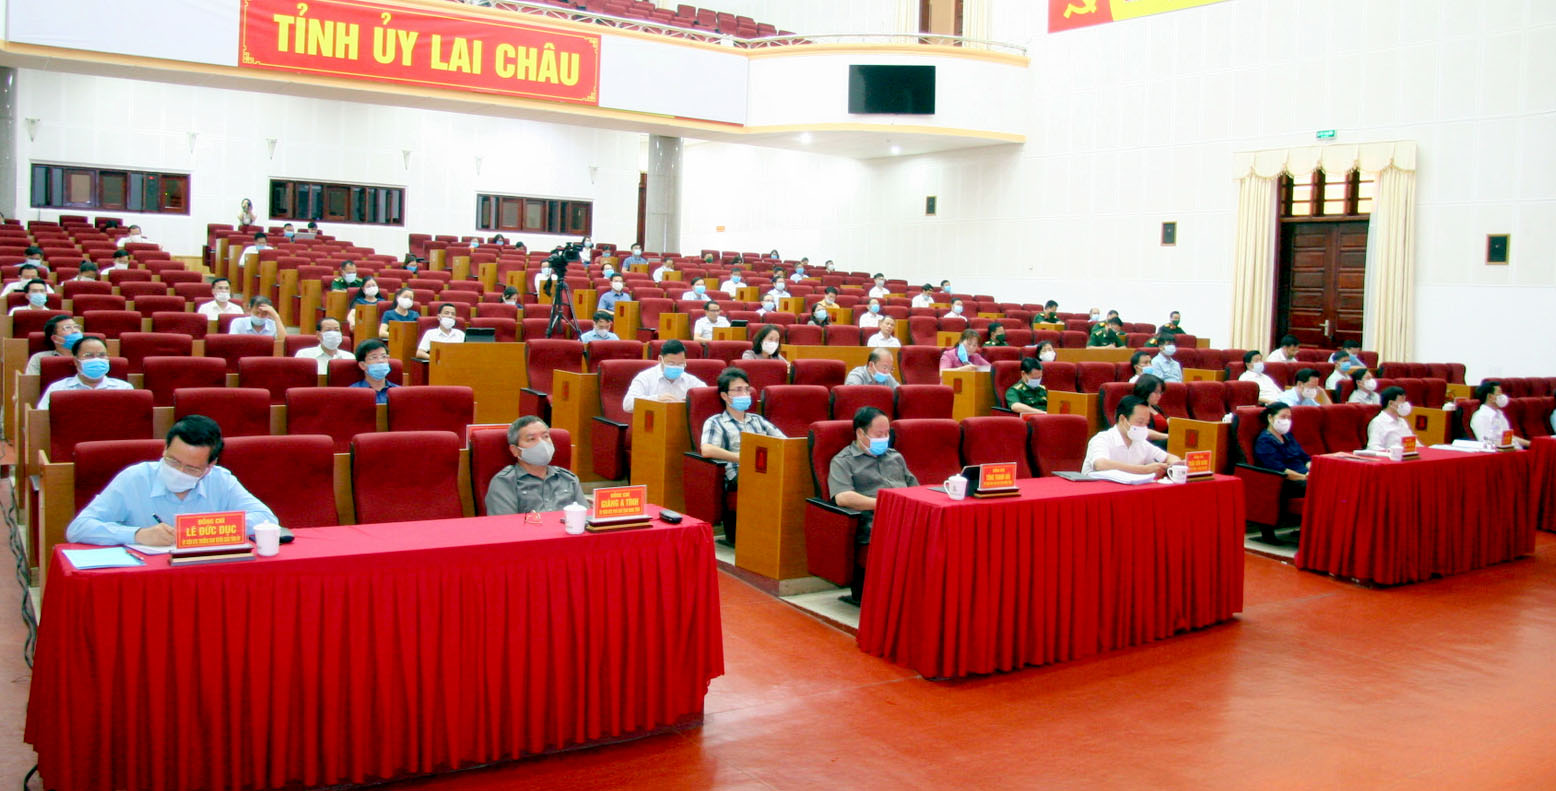 Các đại biểu dự Hội nghị tại điểm cầu Trung tâm Hội nghị - Văn hóa tỉnh Lai Châu.